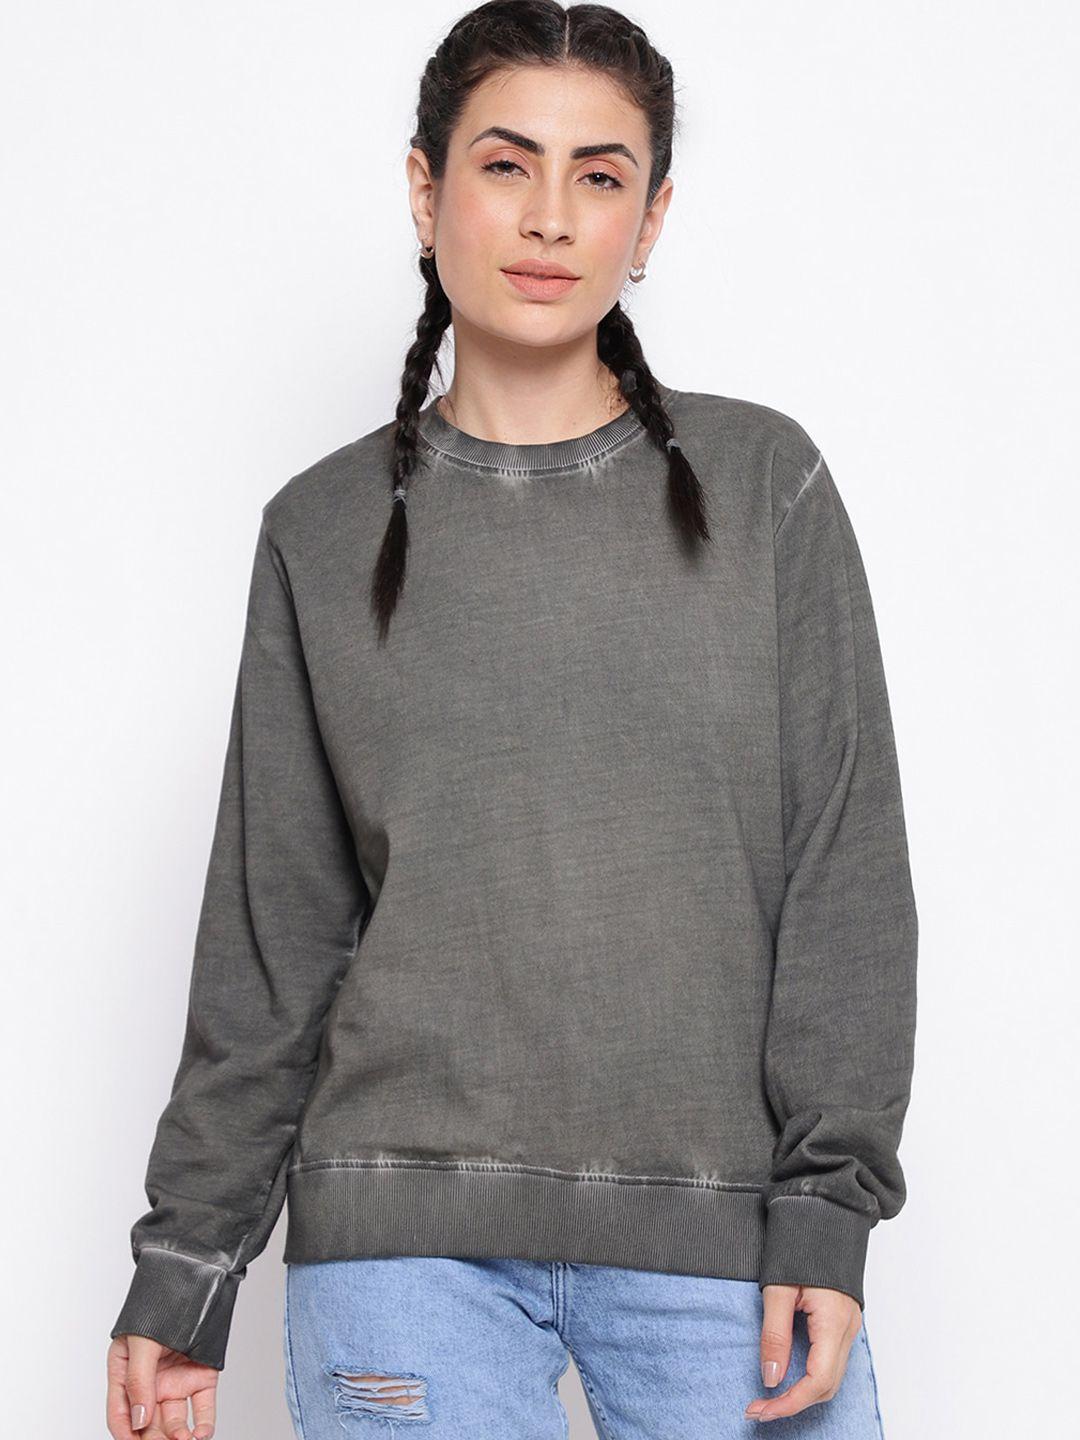 belliskey women printed round neck cotton sweatshirt